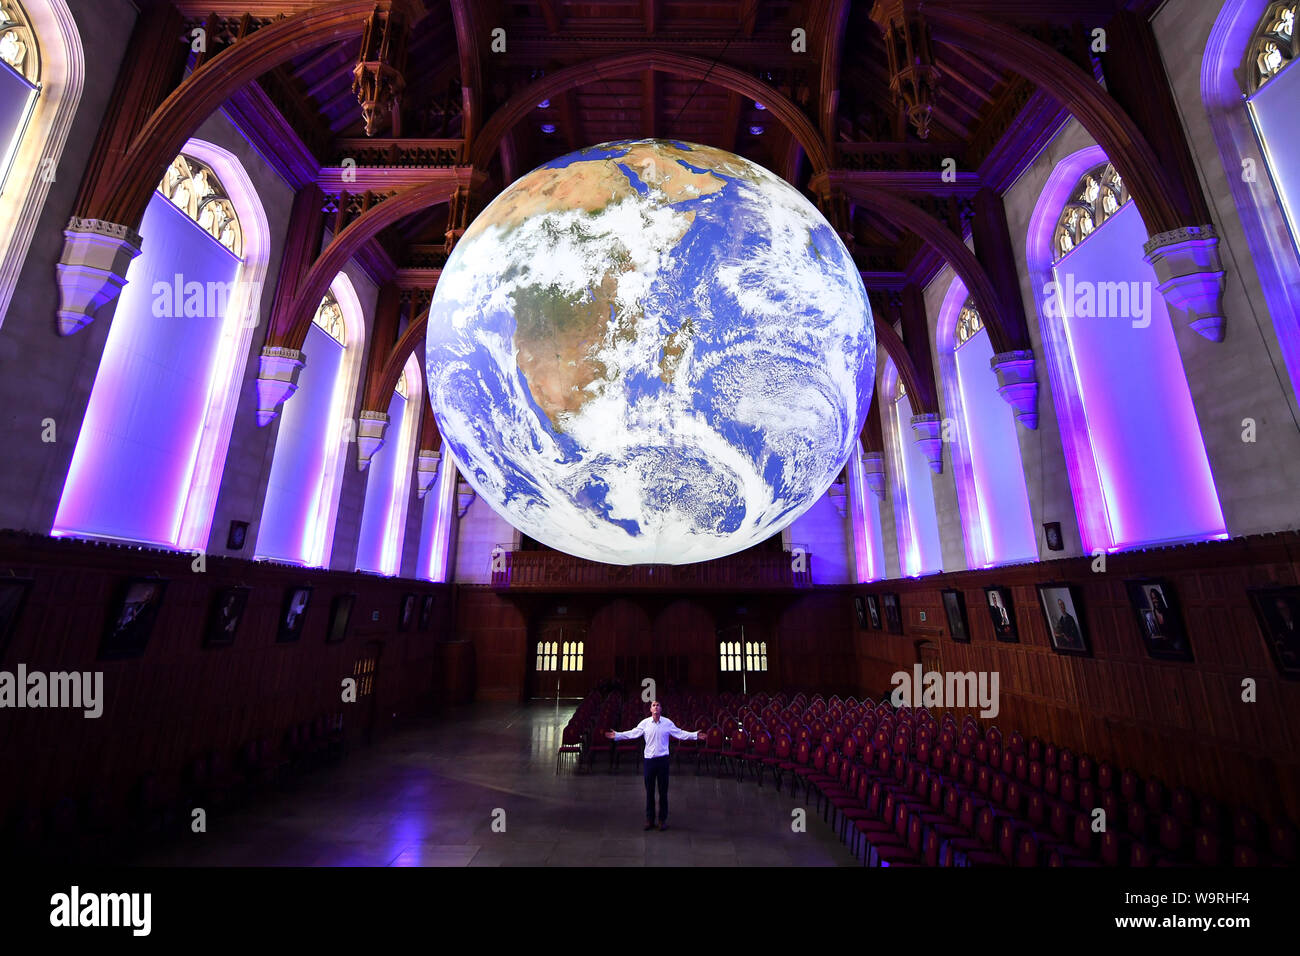 Künstler Luke Jerram steht unter seinem mächtigen Art Installation "Gaia", 7 Meter im Durchmesser und besteht aus unglaublich detaillierte NASA-Bild von der Oberfläche der Erde, wie es in der Großen Halle an der Universität von Bristol hängt. Stockfoto